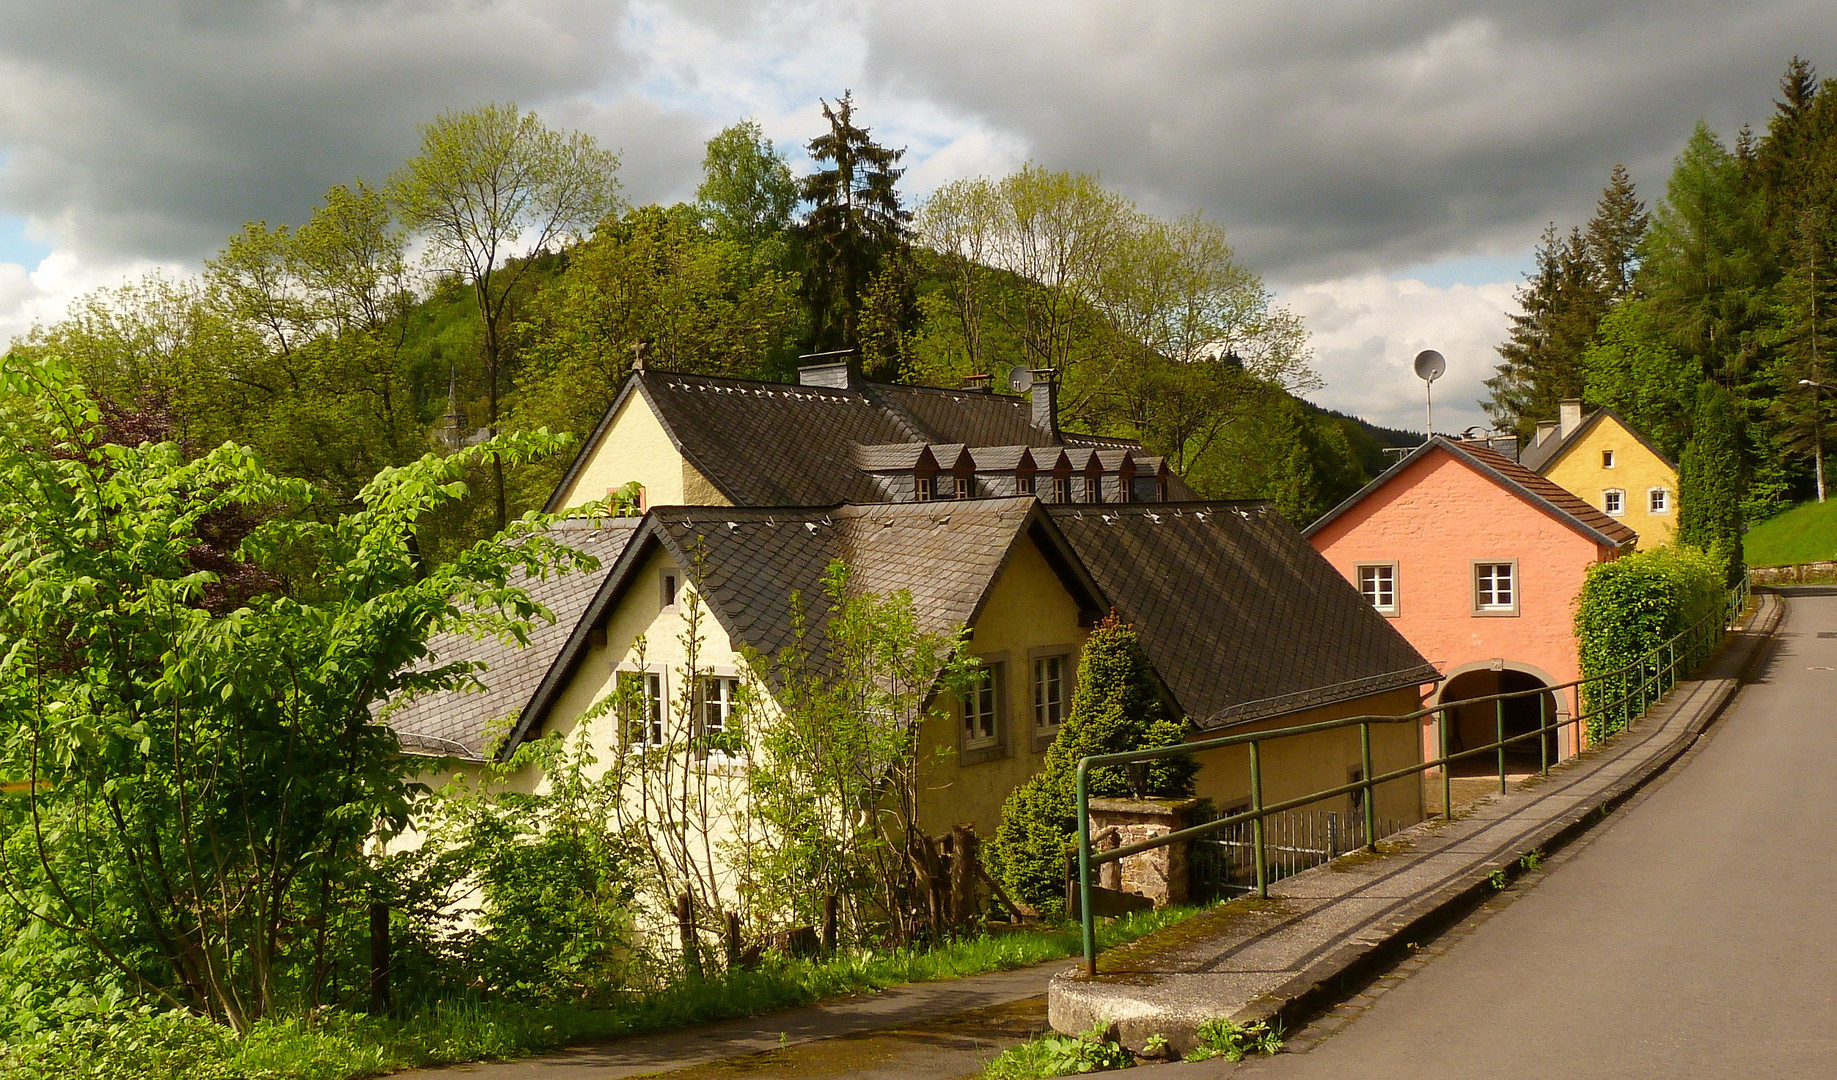 St. Thomas Mühle